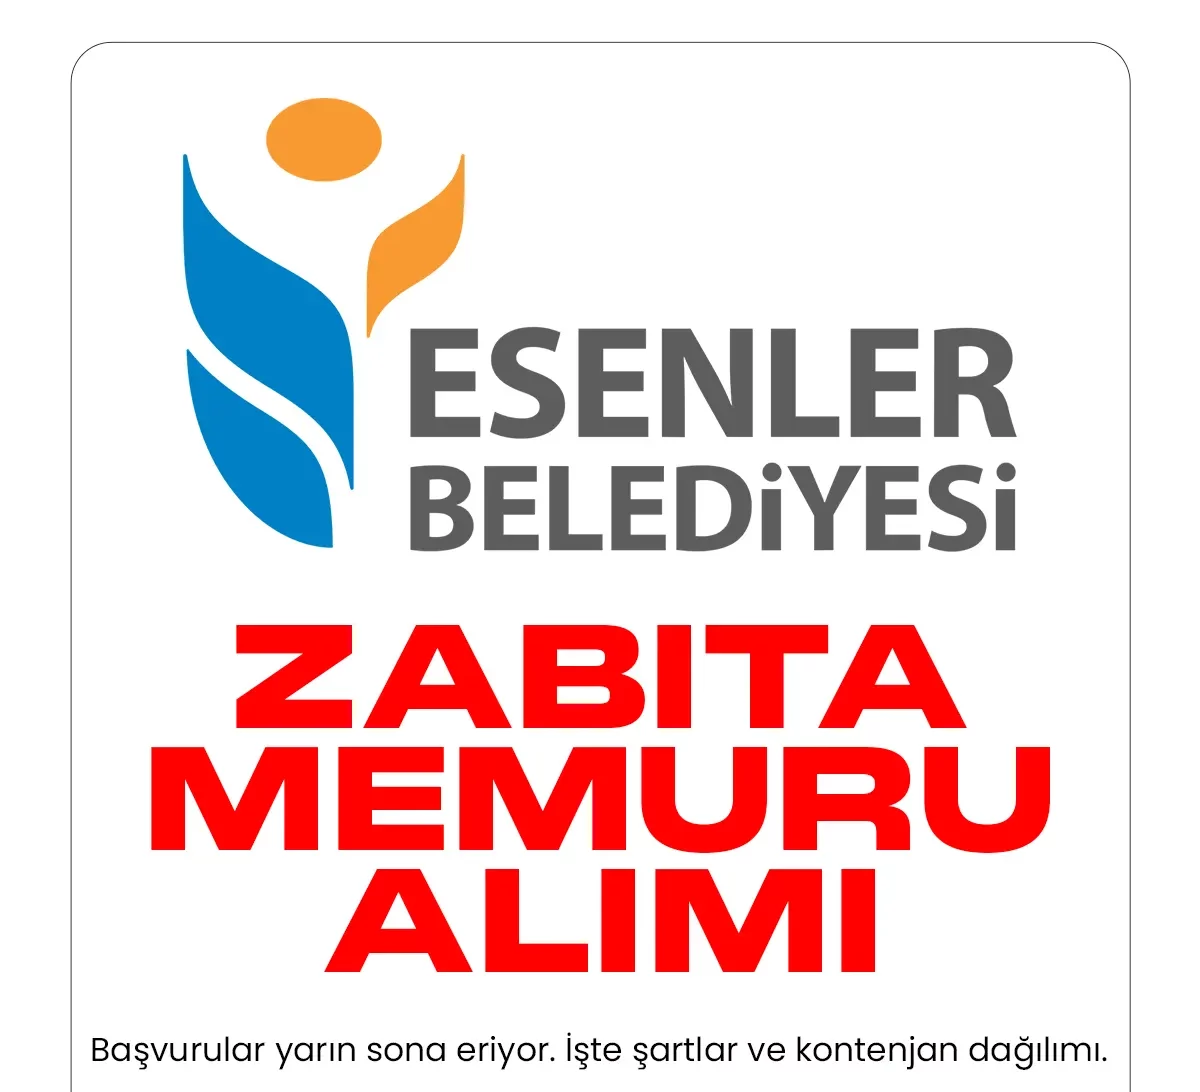 İstanbul Esenler Belediyesi zabıta memuru alımı başvurularında sona gelindi.